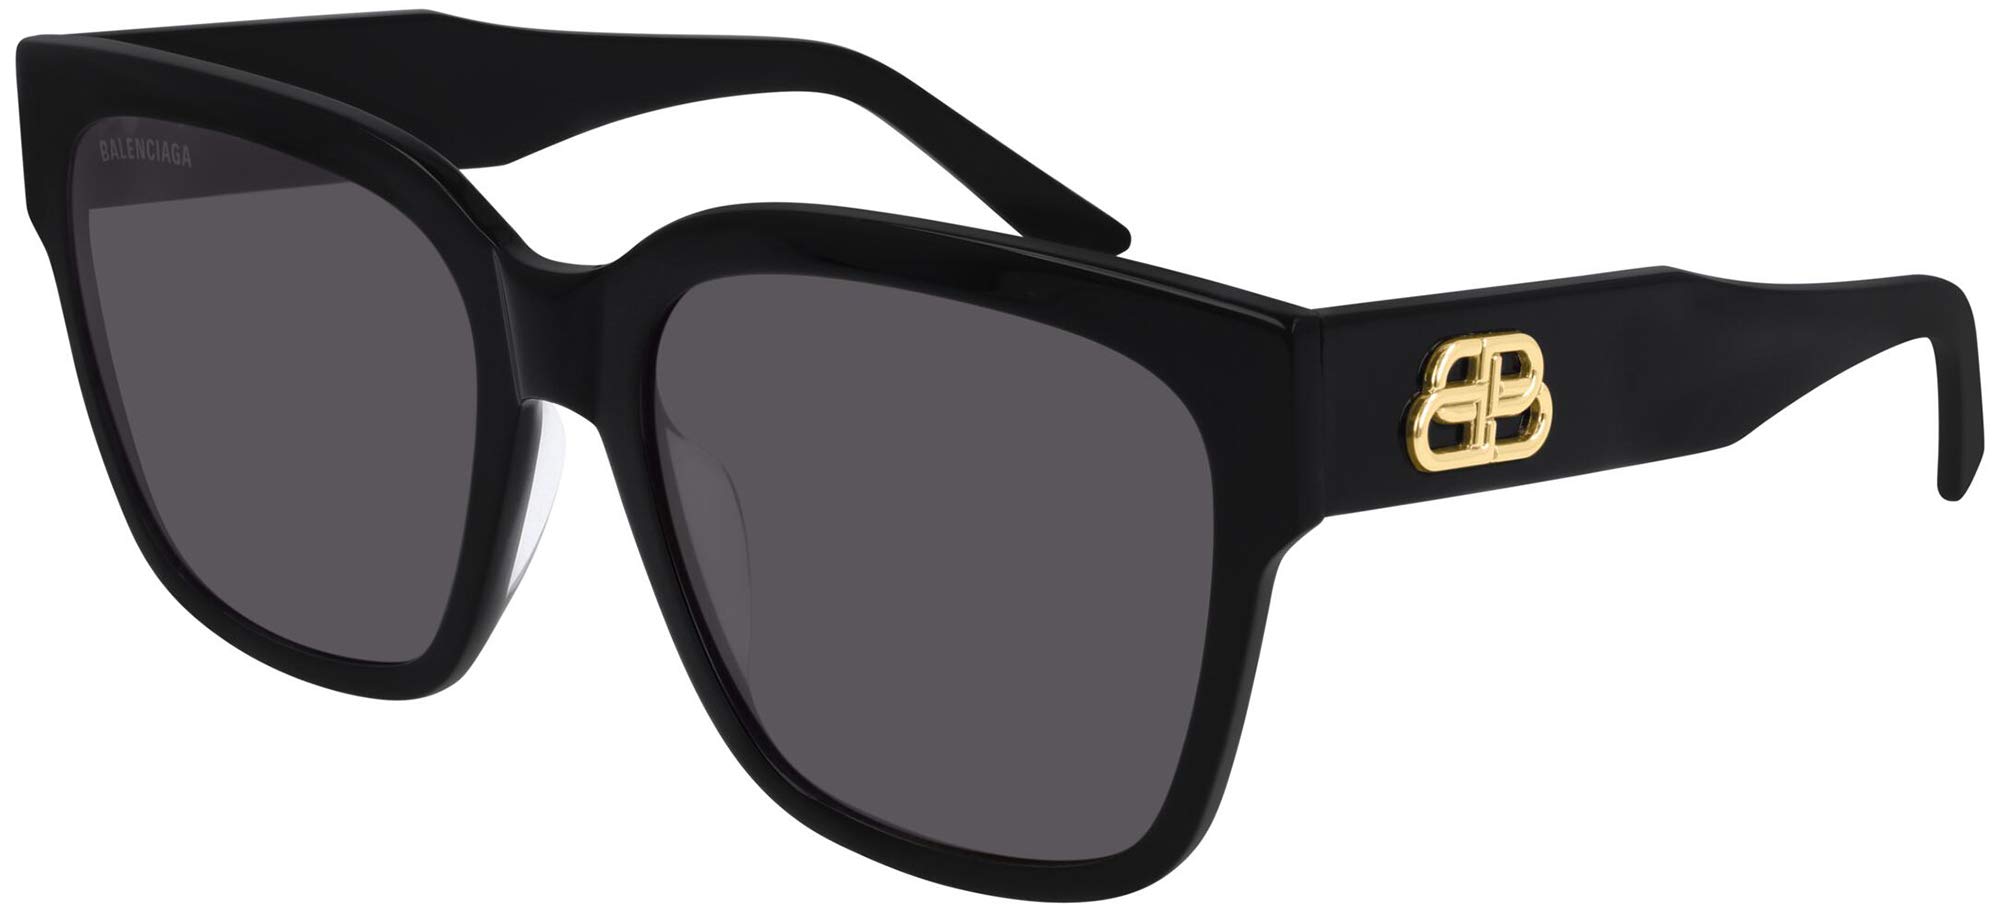 Balenciaga Square Sunglasses BB0056S 001 Black/Gold 55mm